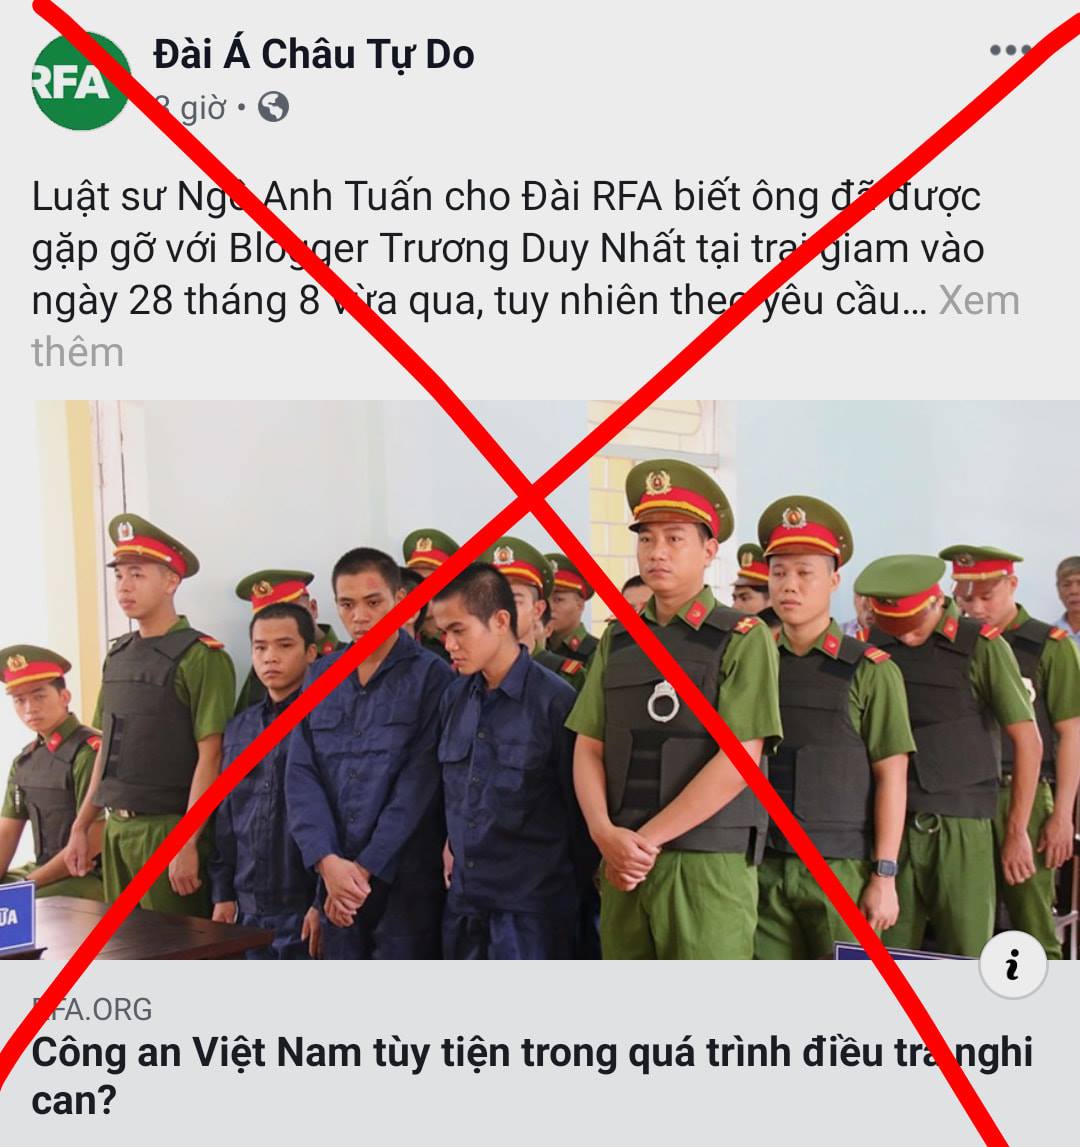 Về sự ngáo khi viết, nhiều nhà báo VN còn thua xa những người trong ban tiếng Việt của RFA